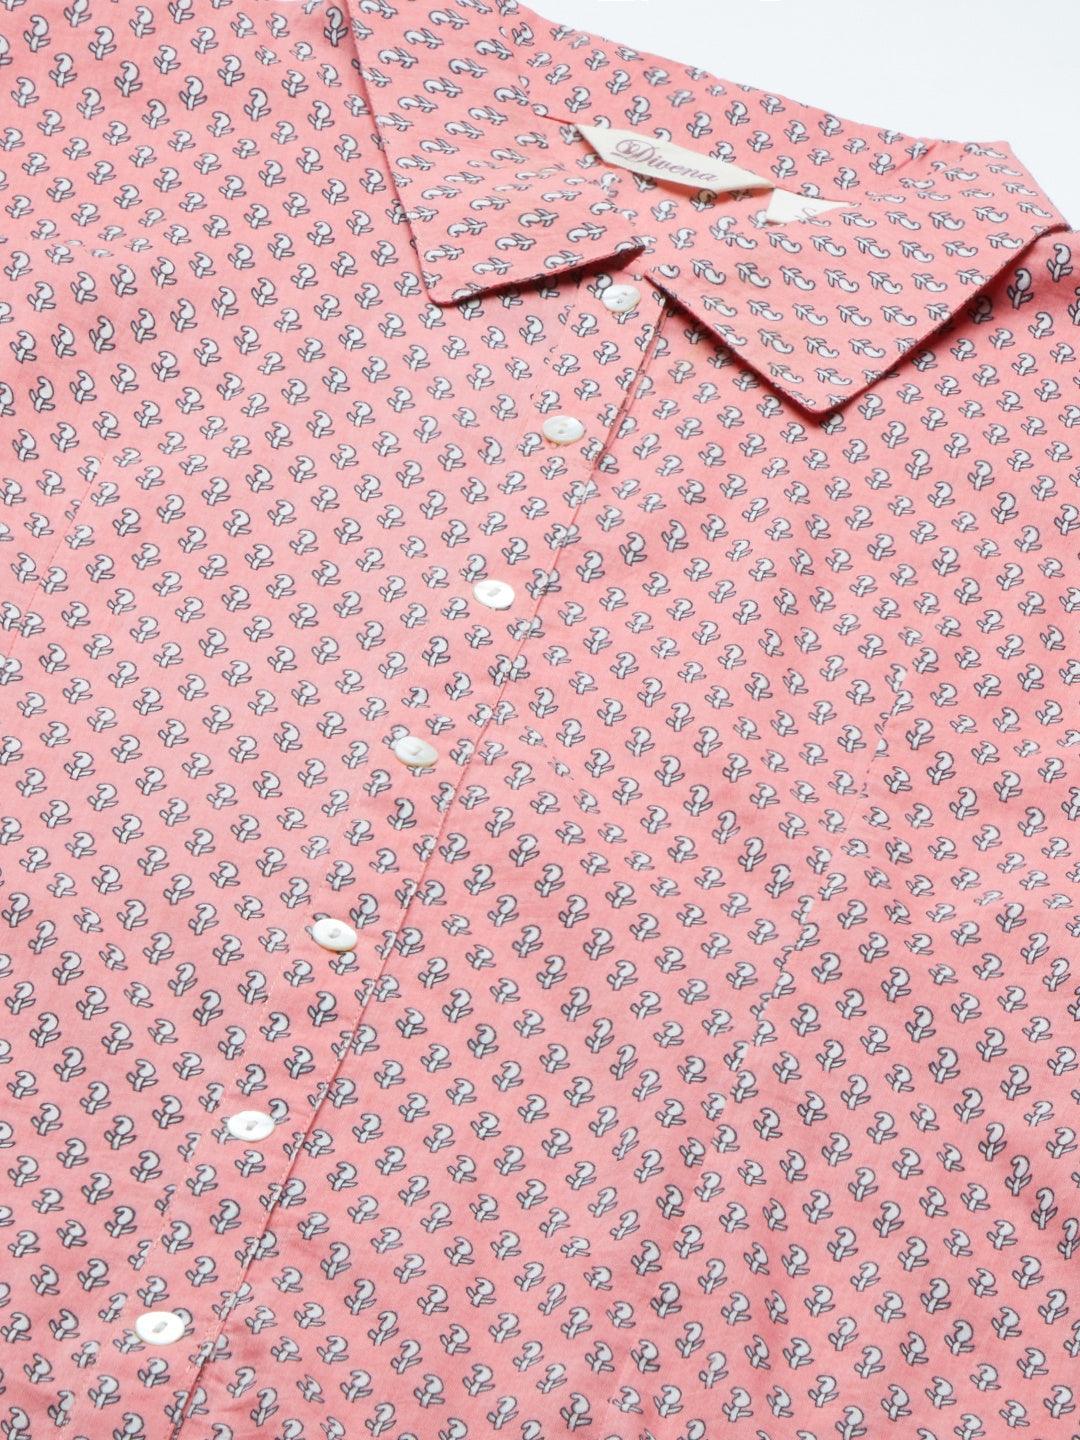 Divena Baby Pink Block Printed Casual Women Shirts - divena world